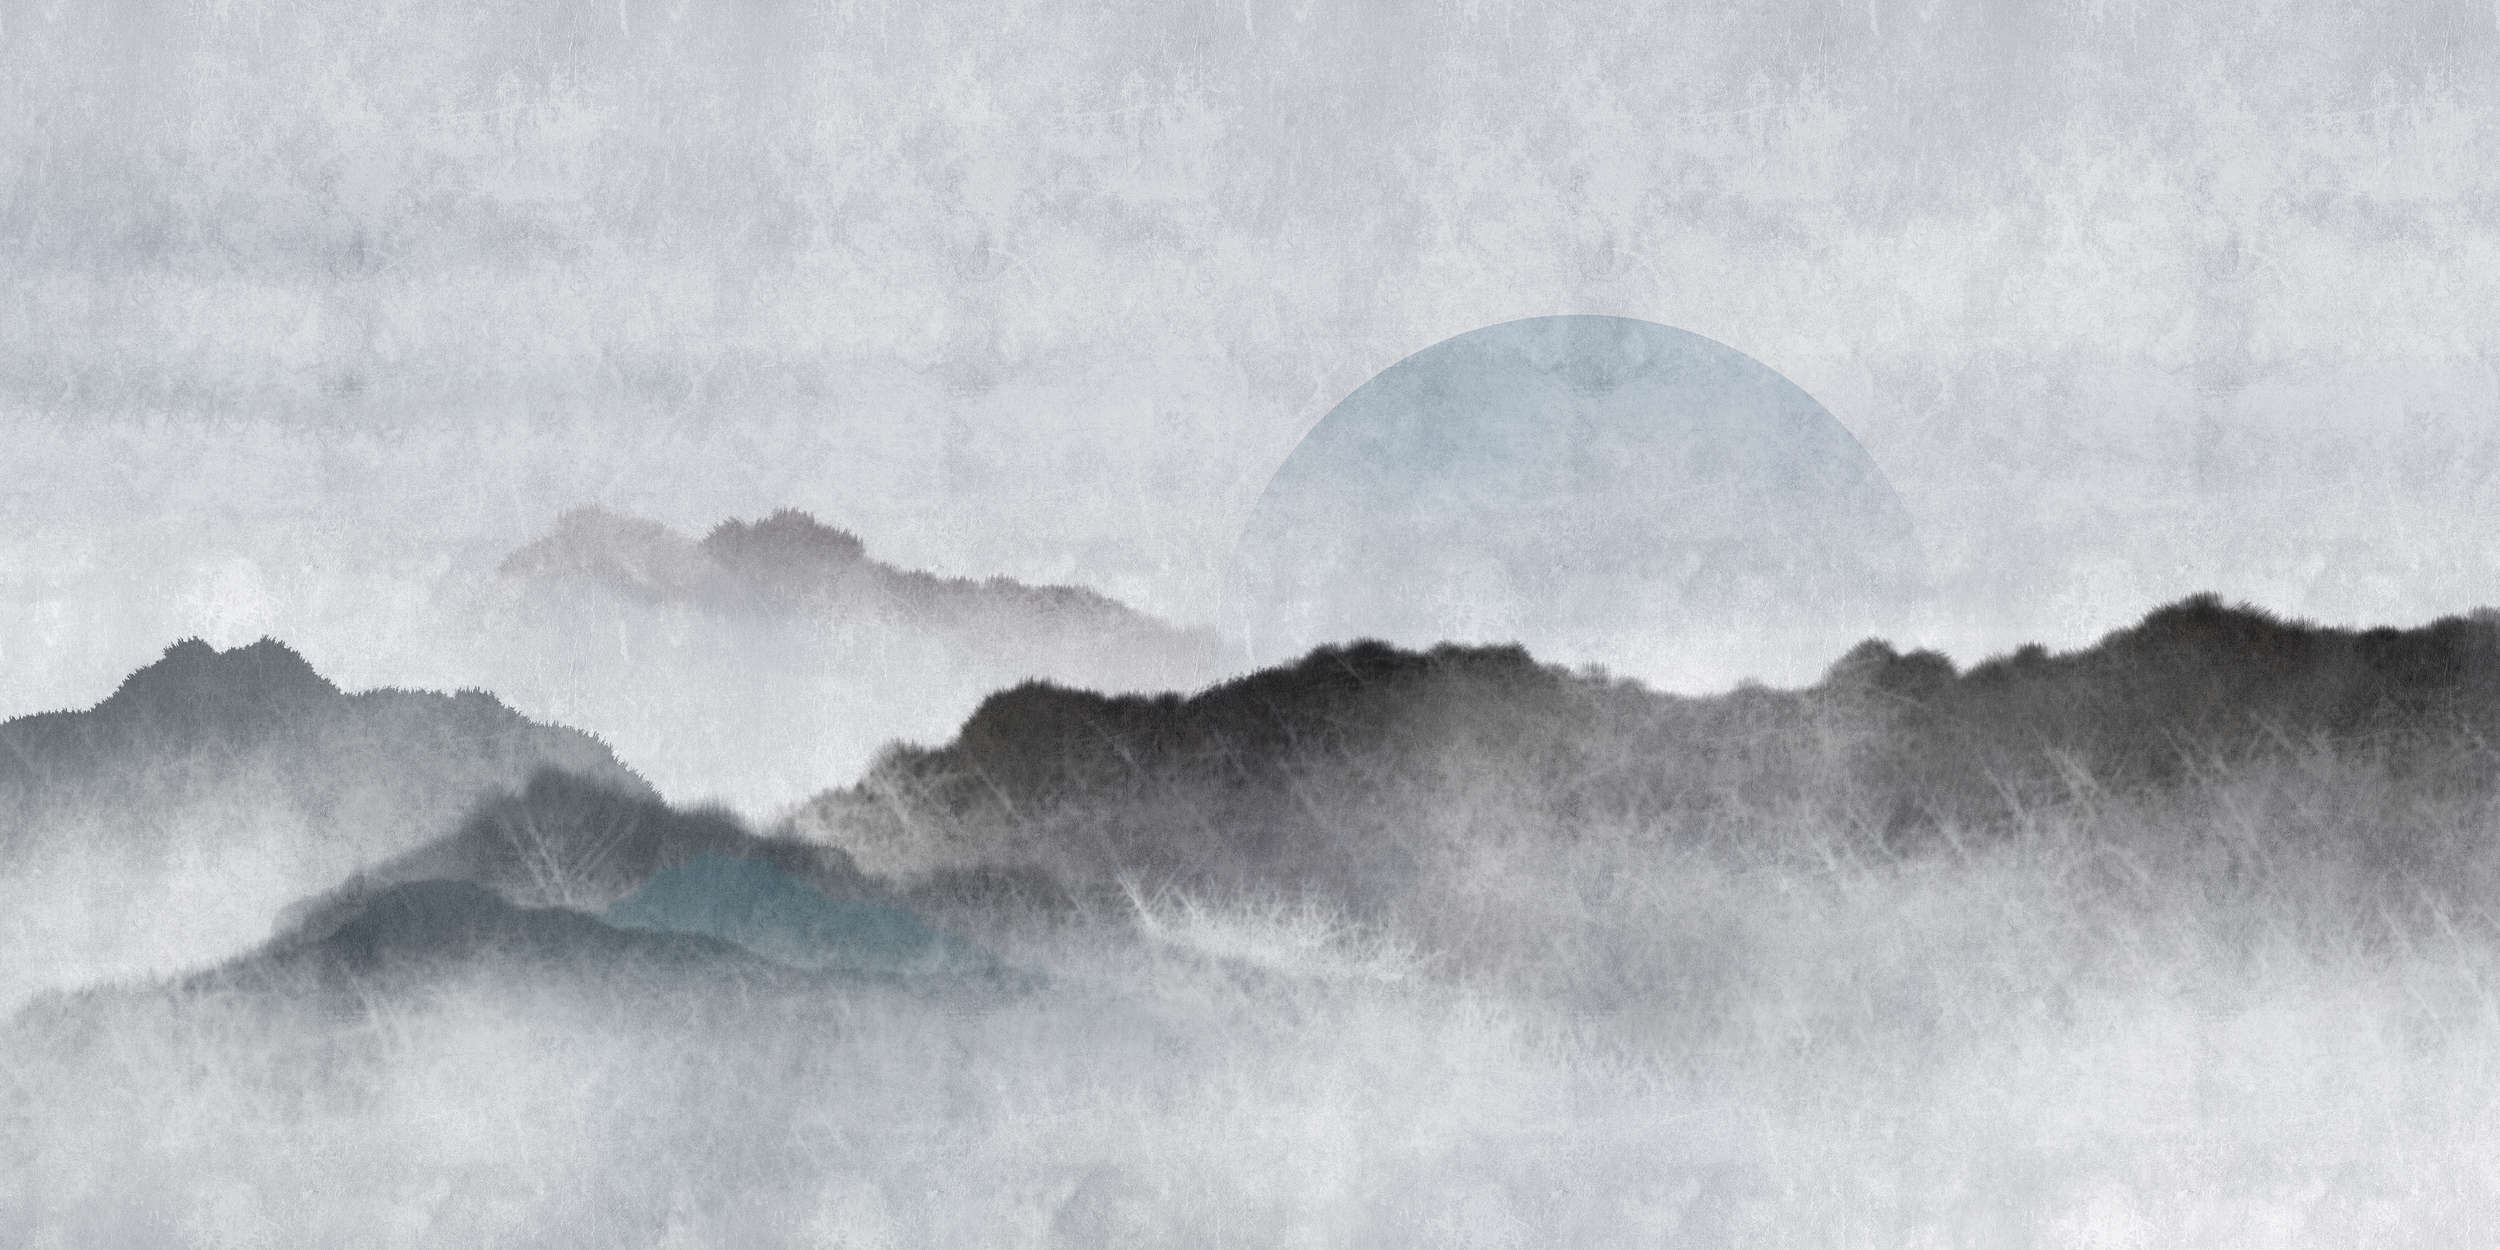             Akaishi 2 – Fototapete Asiatische Kunst Berglandschaft, Grau & Weiß
        